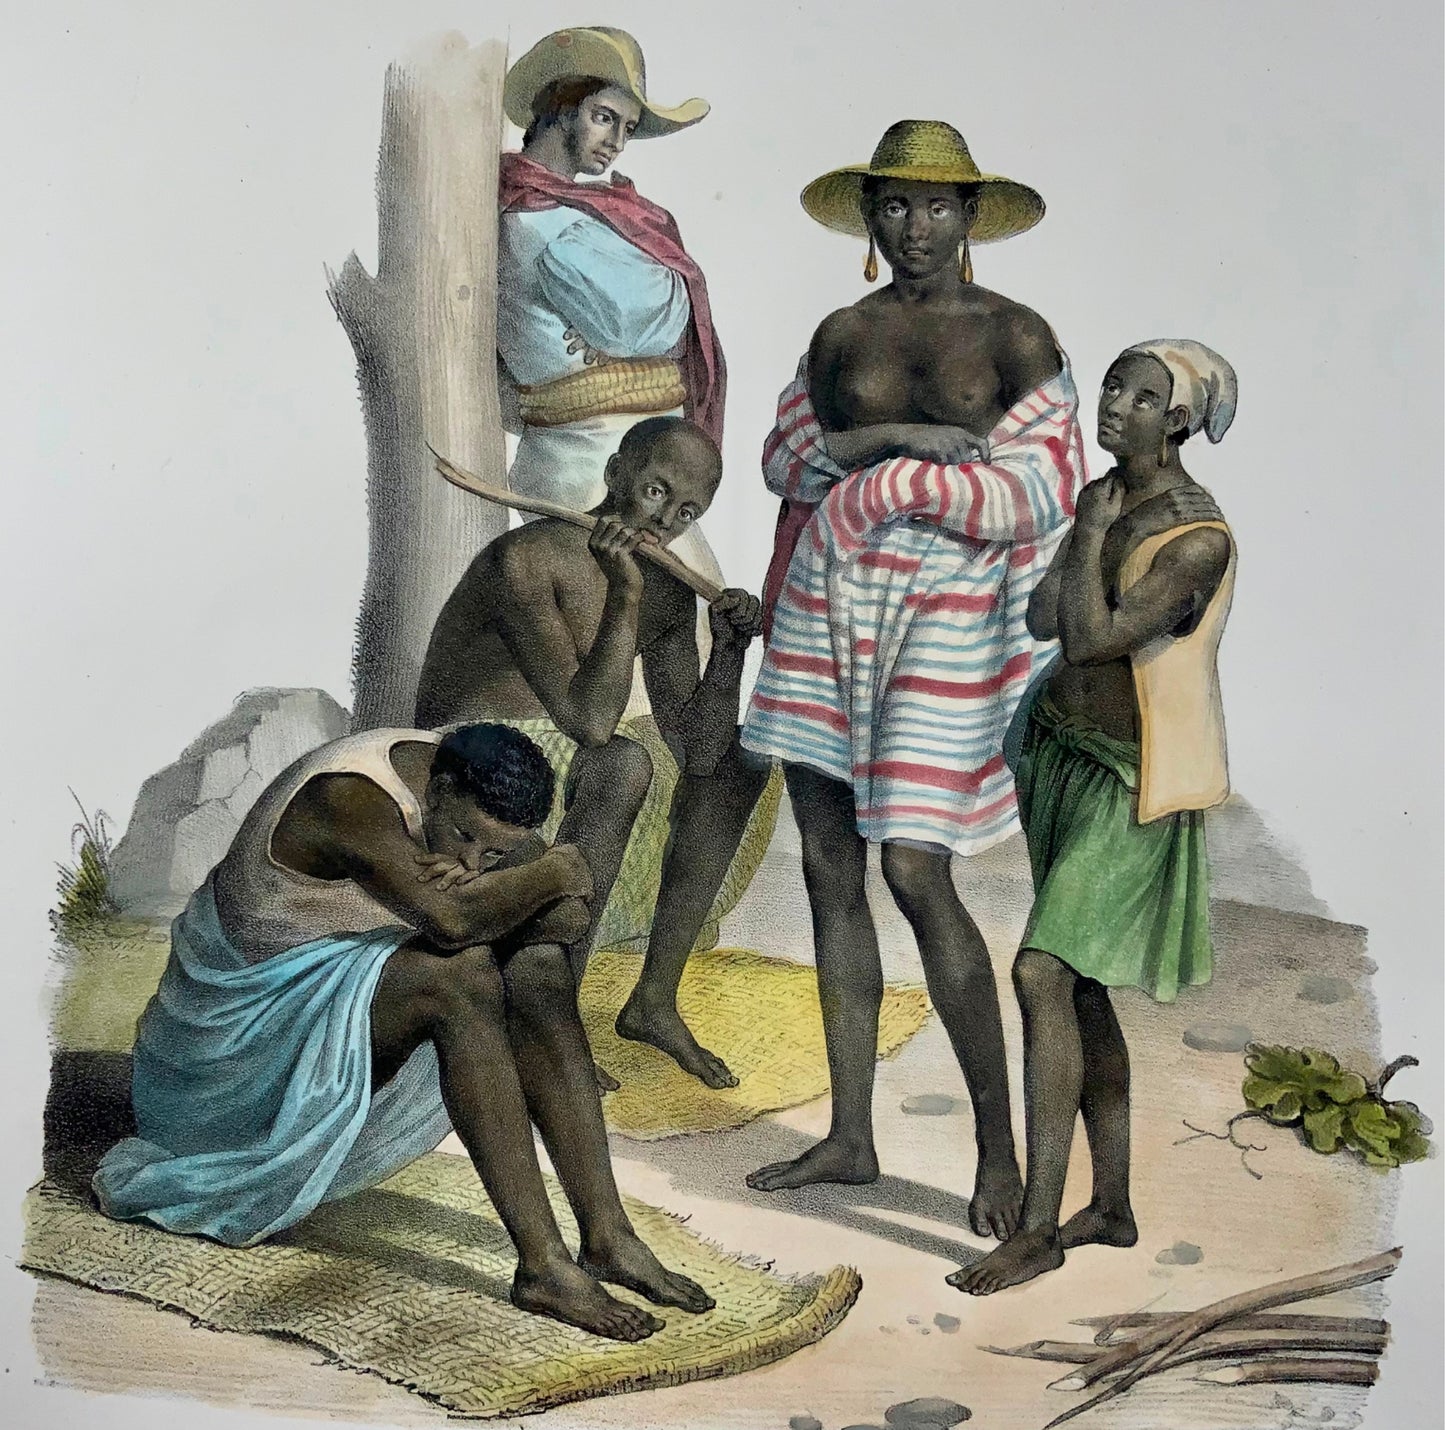 1840 Esclavage, esclaves africains, d’après Fuchs, lithographie en pierre folio colorée à la main, ethnologie